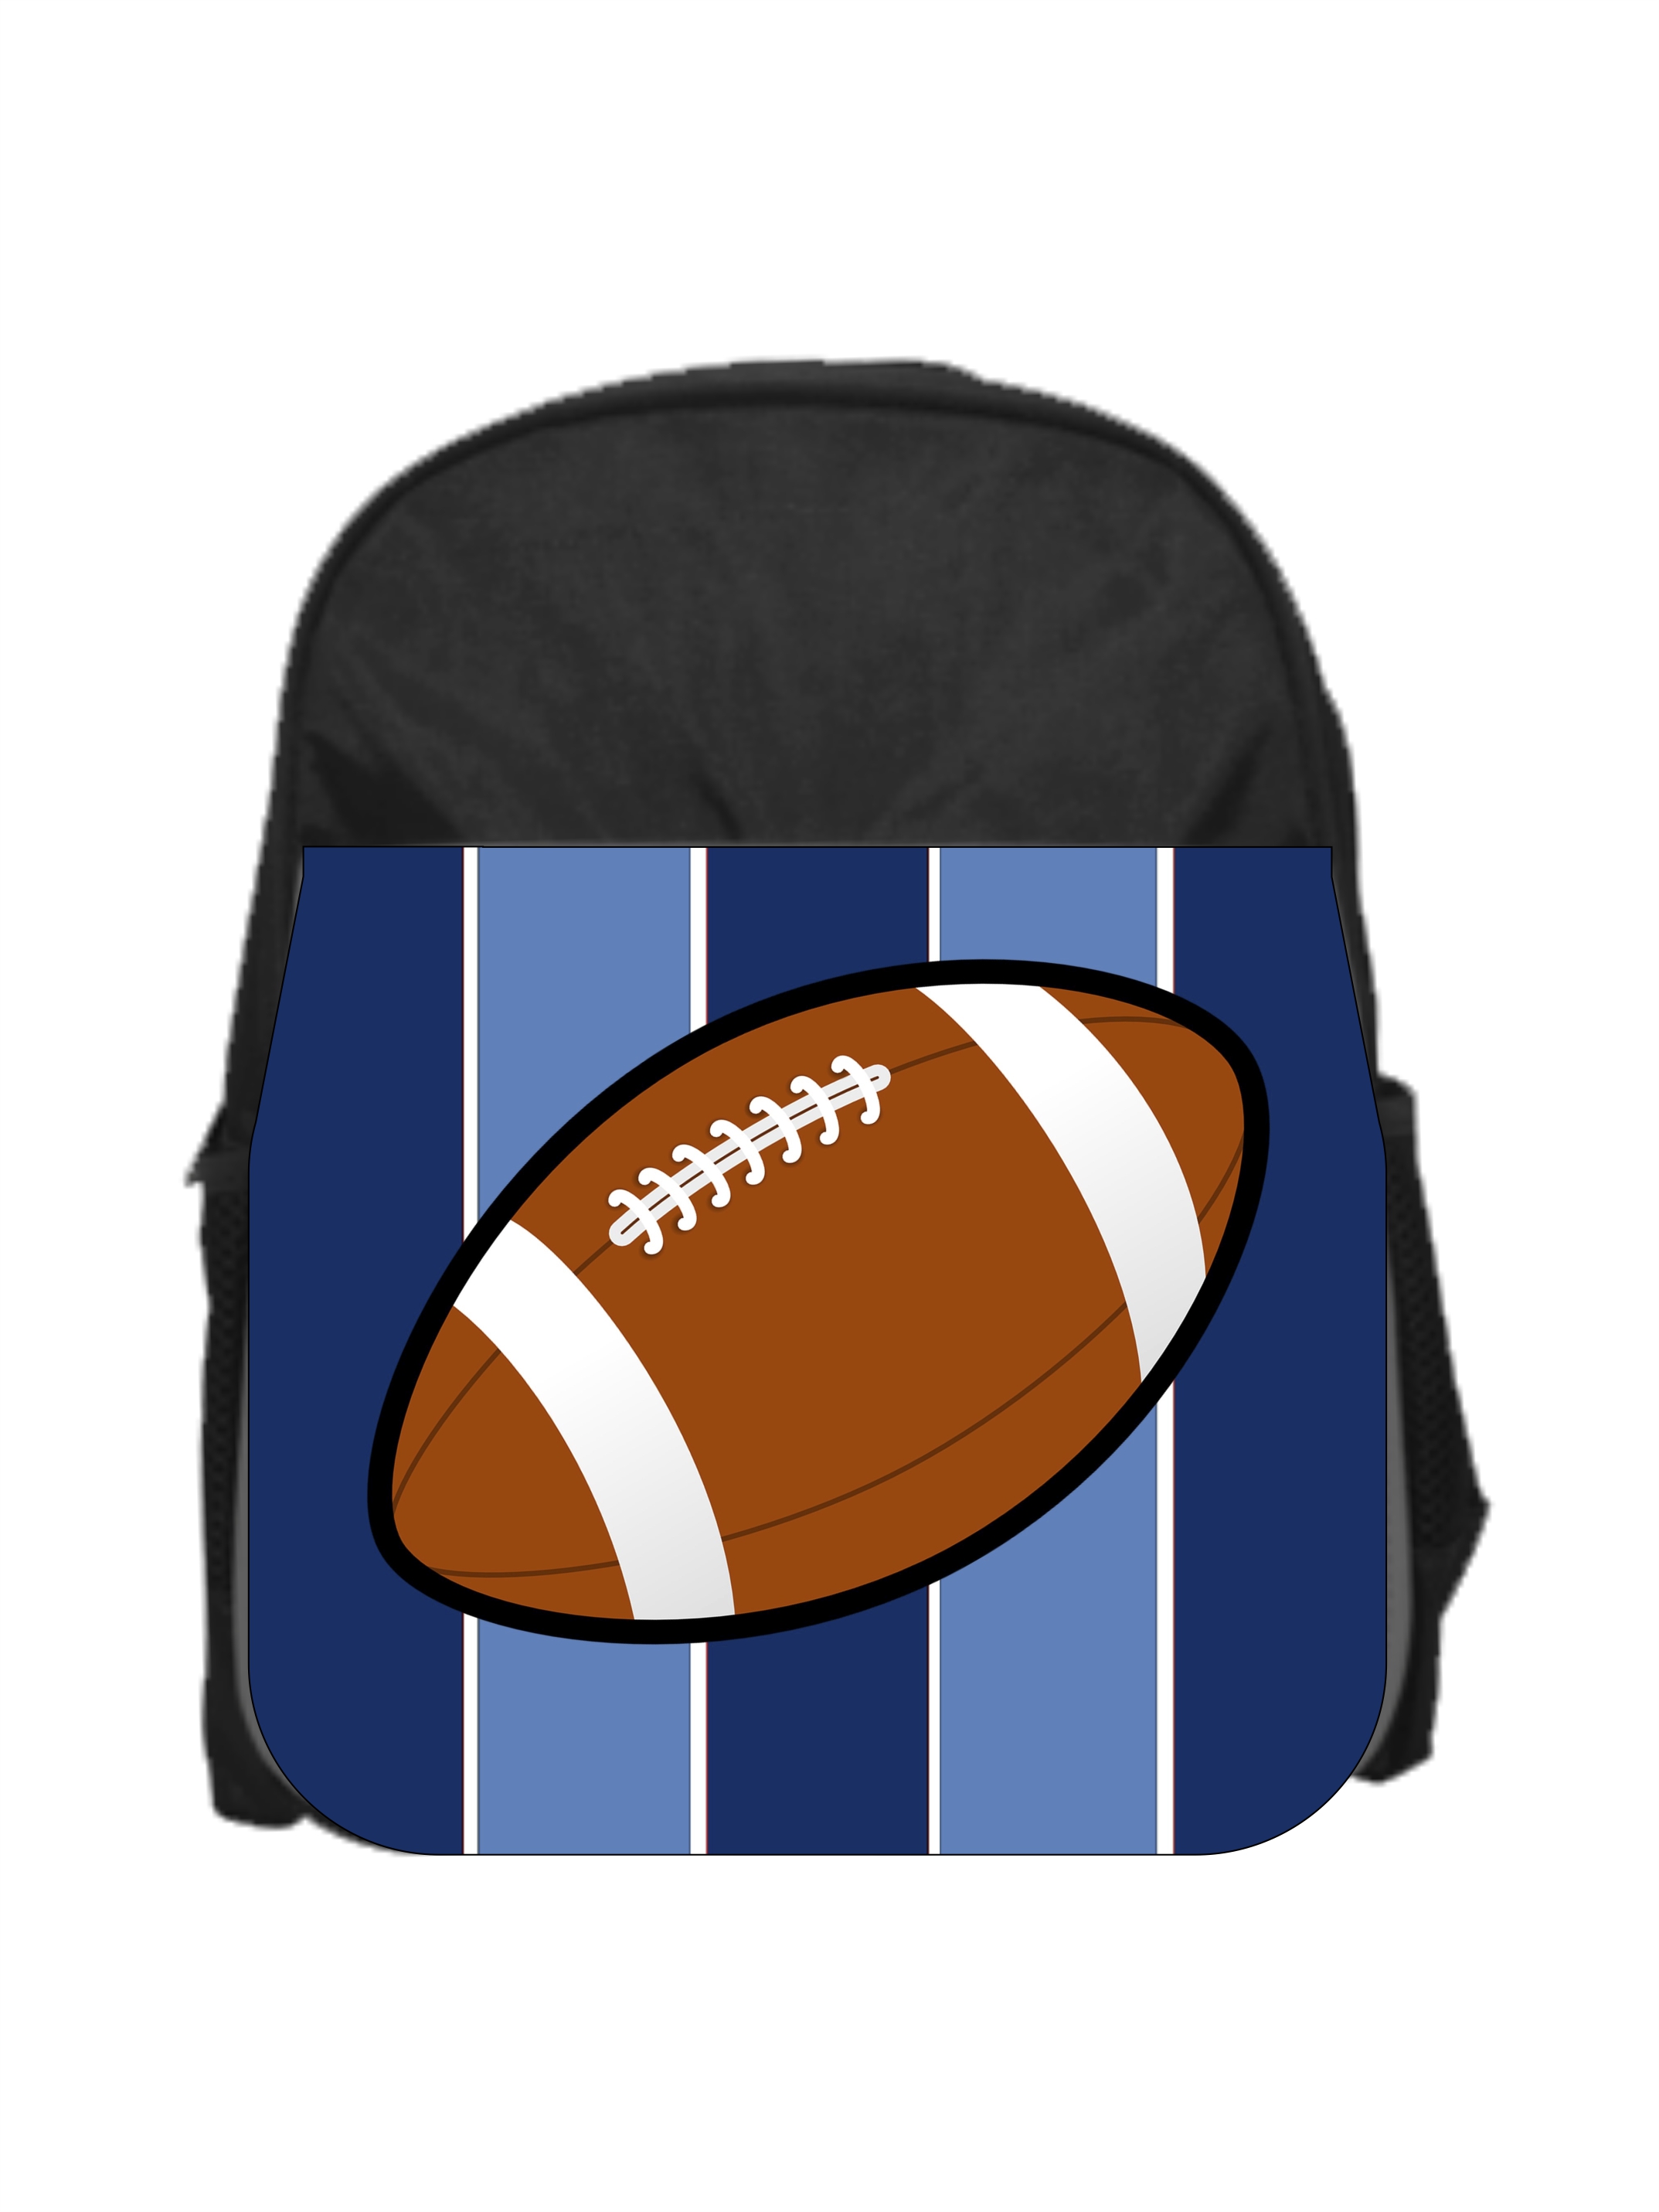 Football on Blue Stripes - Boys 13" x 10" Black Preschool Toddler Children's Backpack - image 1 of 2